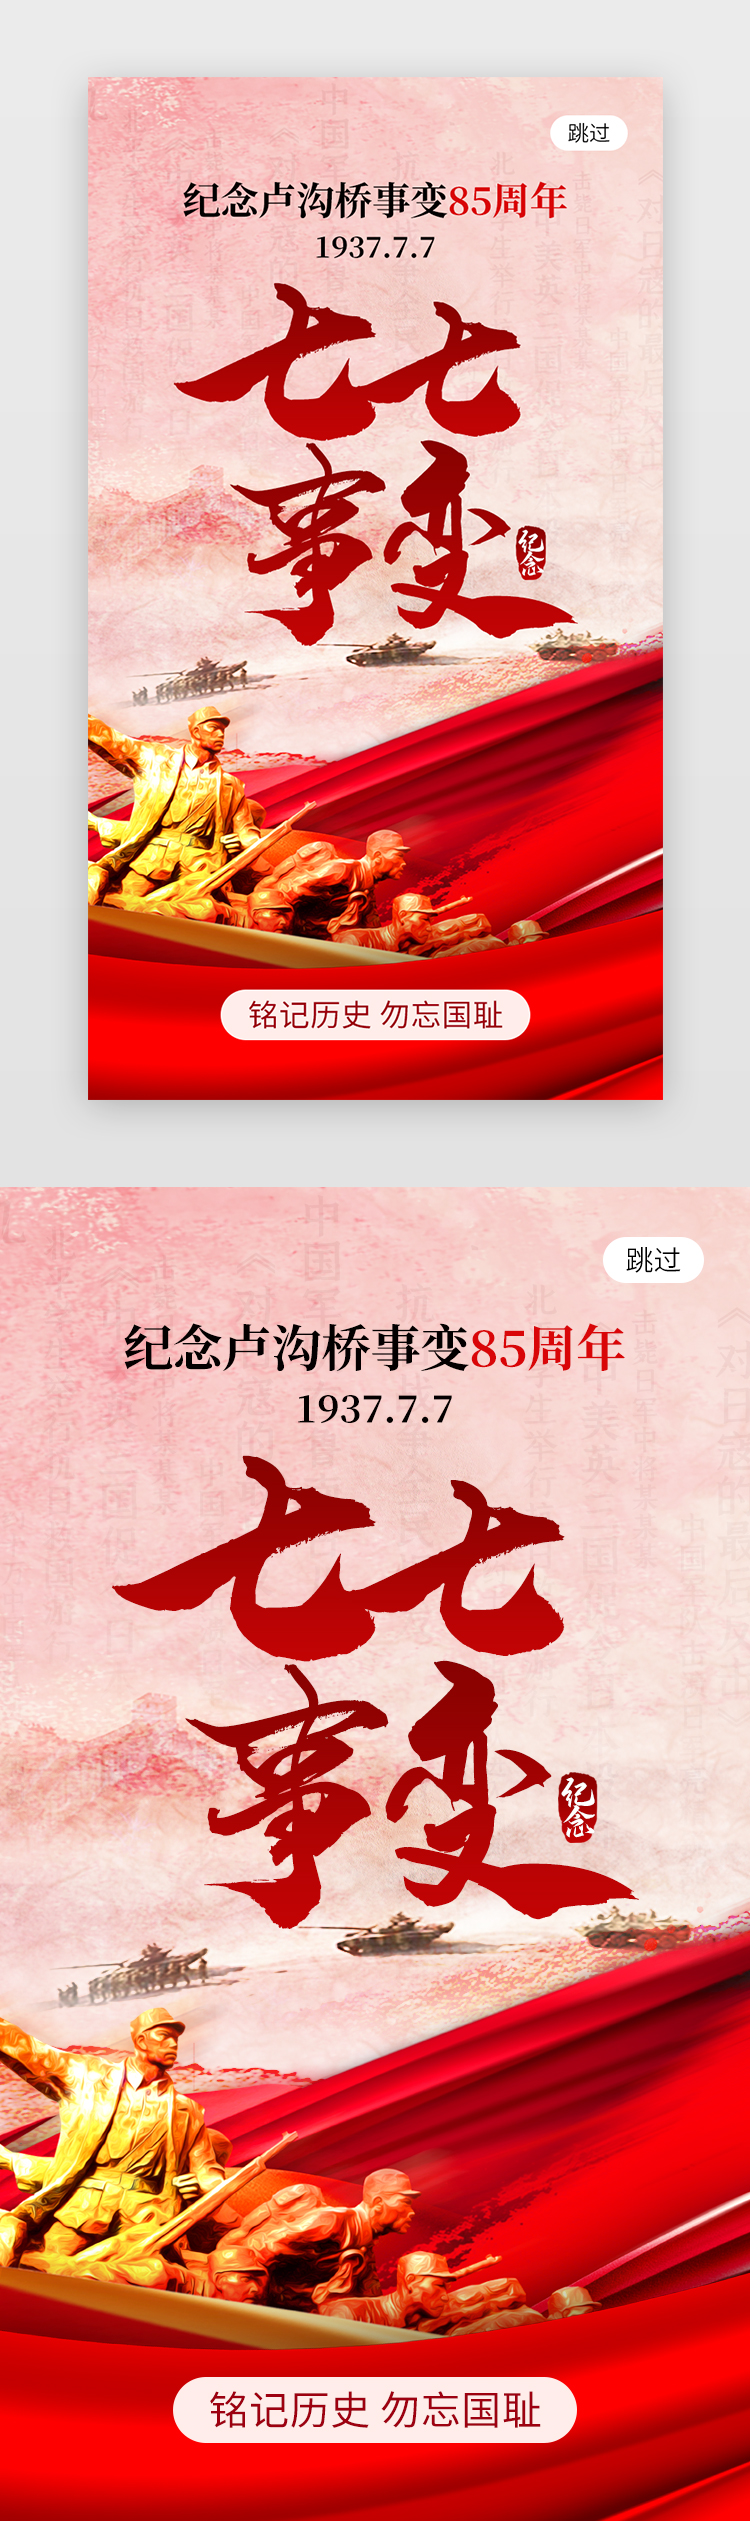 七七事变app闪屏创意红色抗战士兵图片